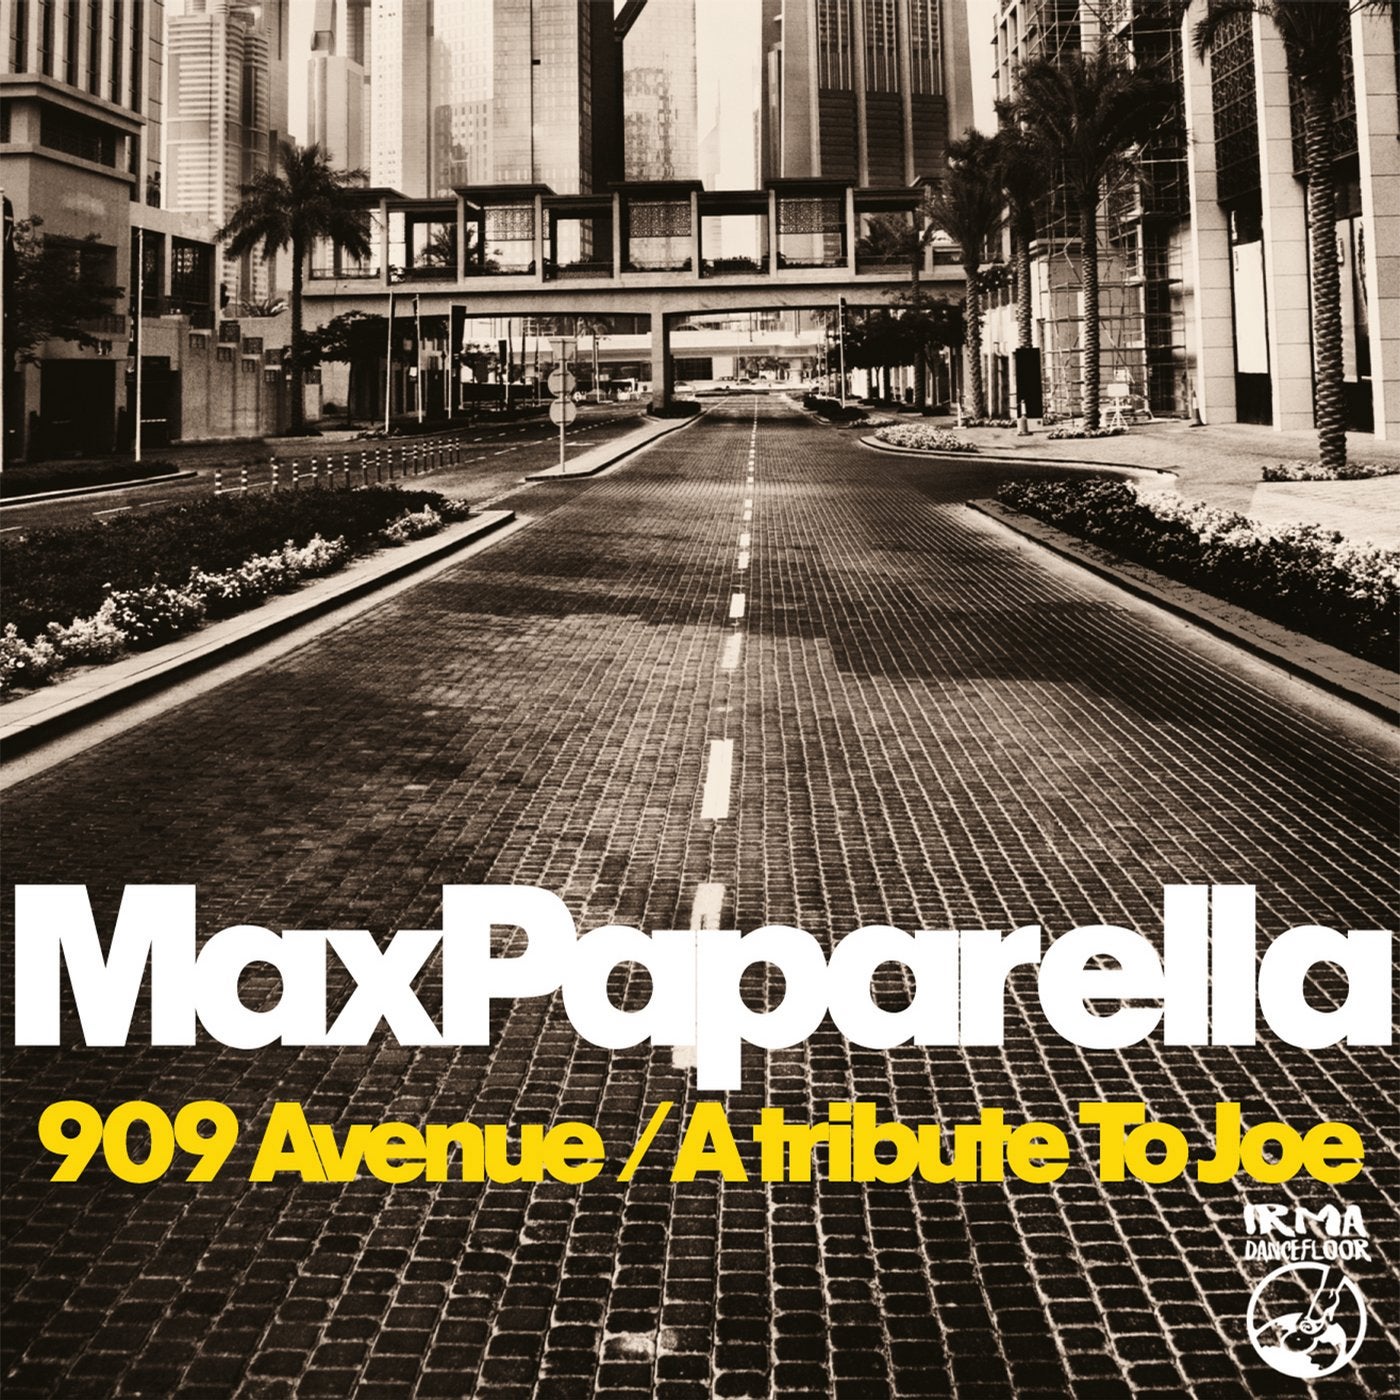 909 Avenue / A tribute to Joe